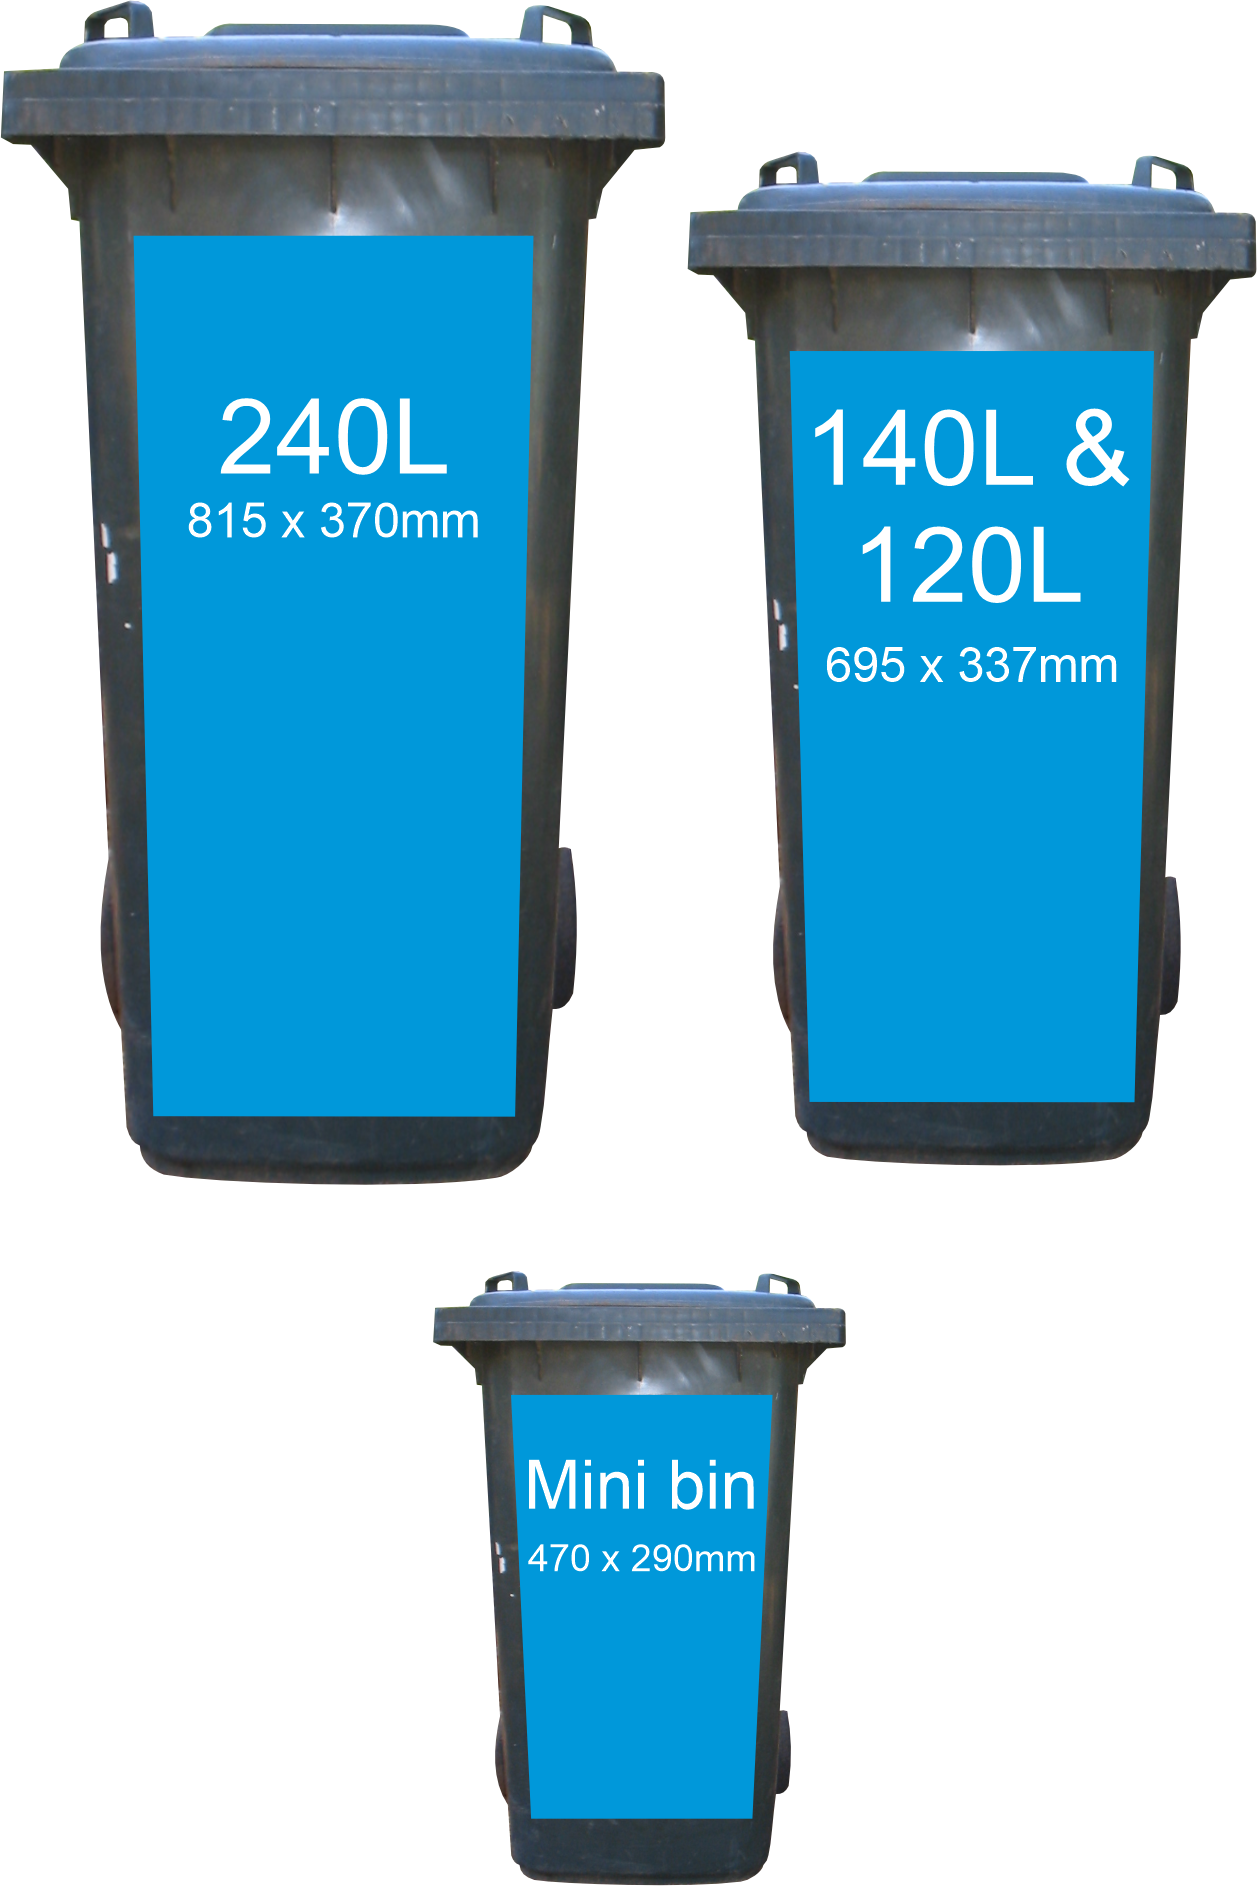 sizes in Cricket pitch wheelie bin sticker